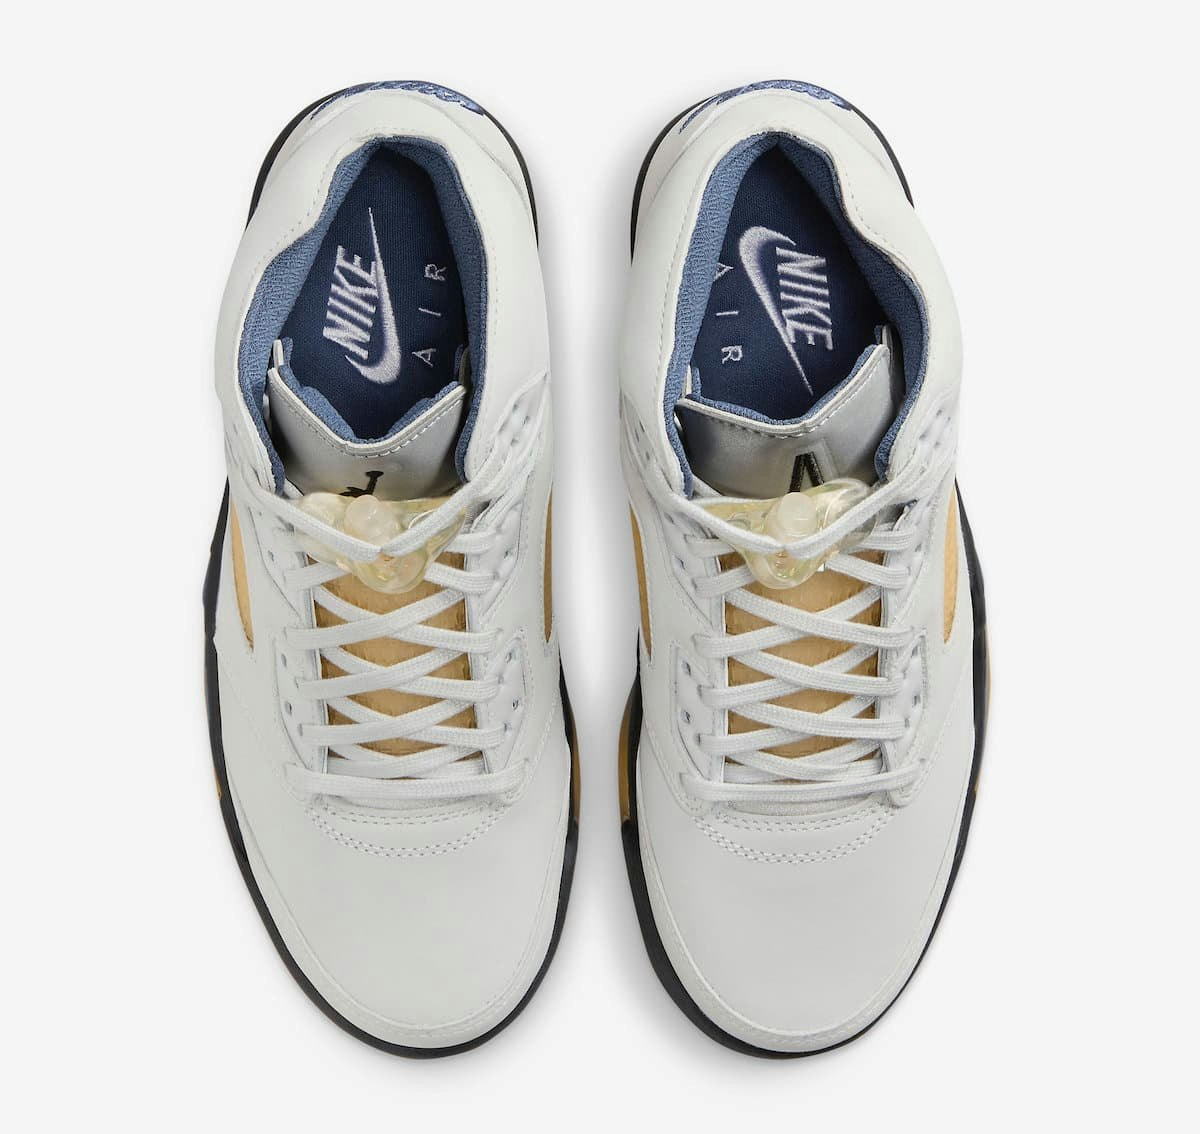 A Ma Maniere x Air Jordan 5 “Diffused Blue”